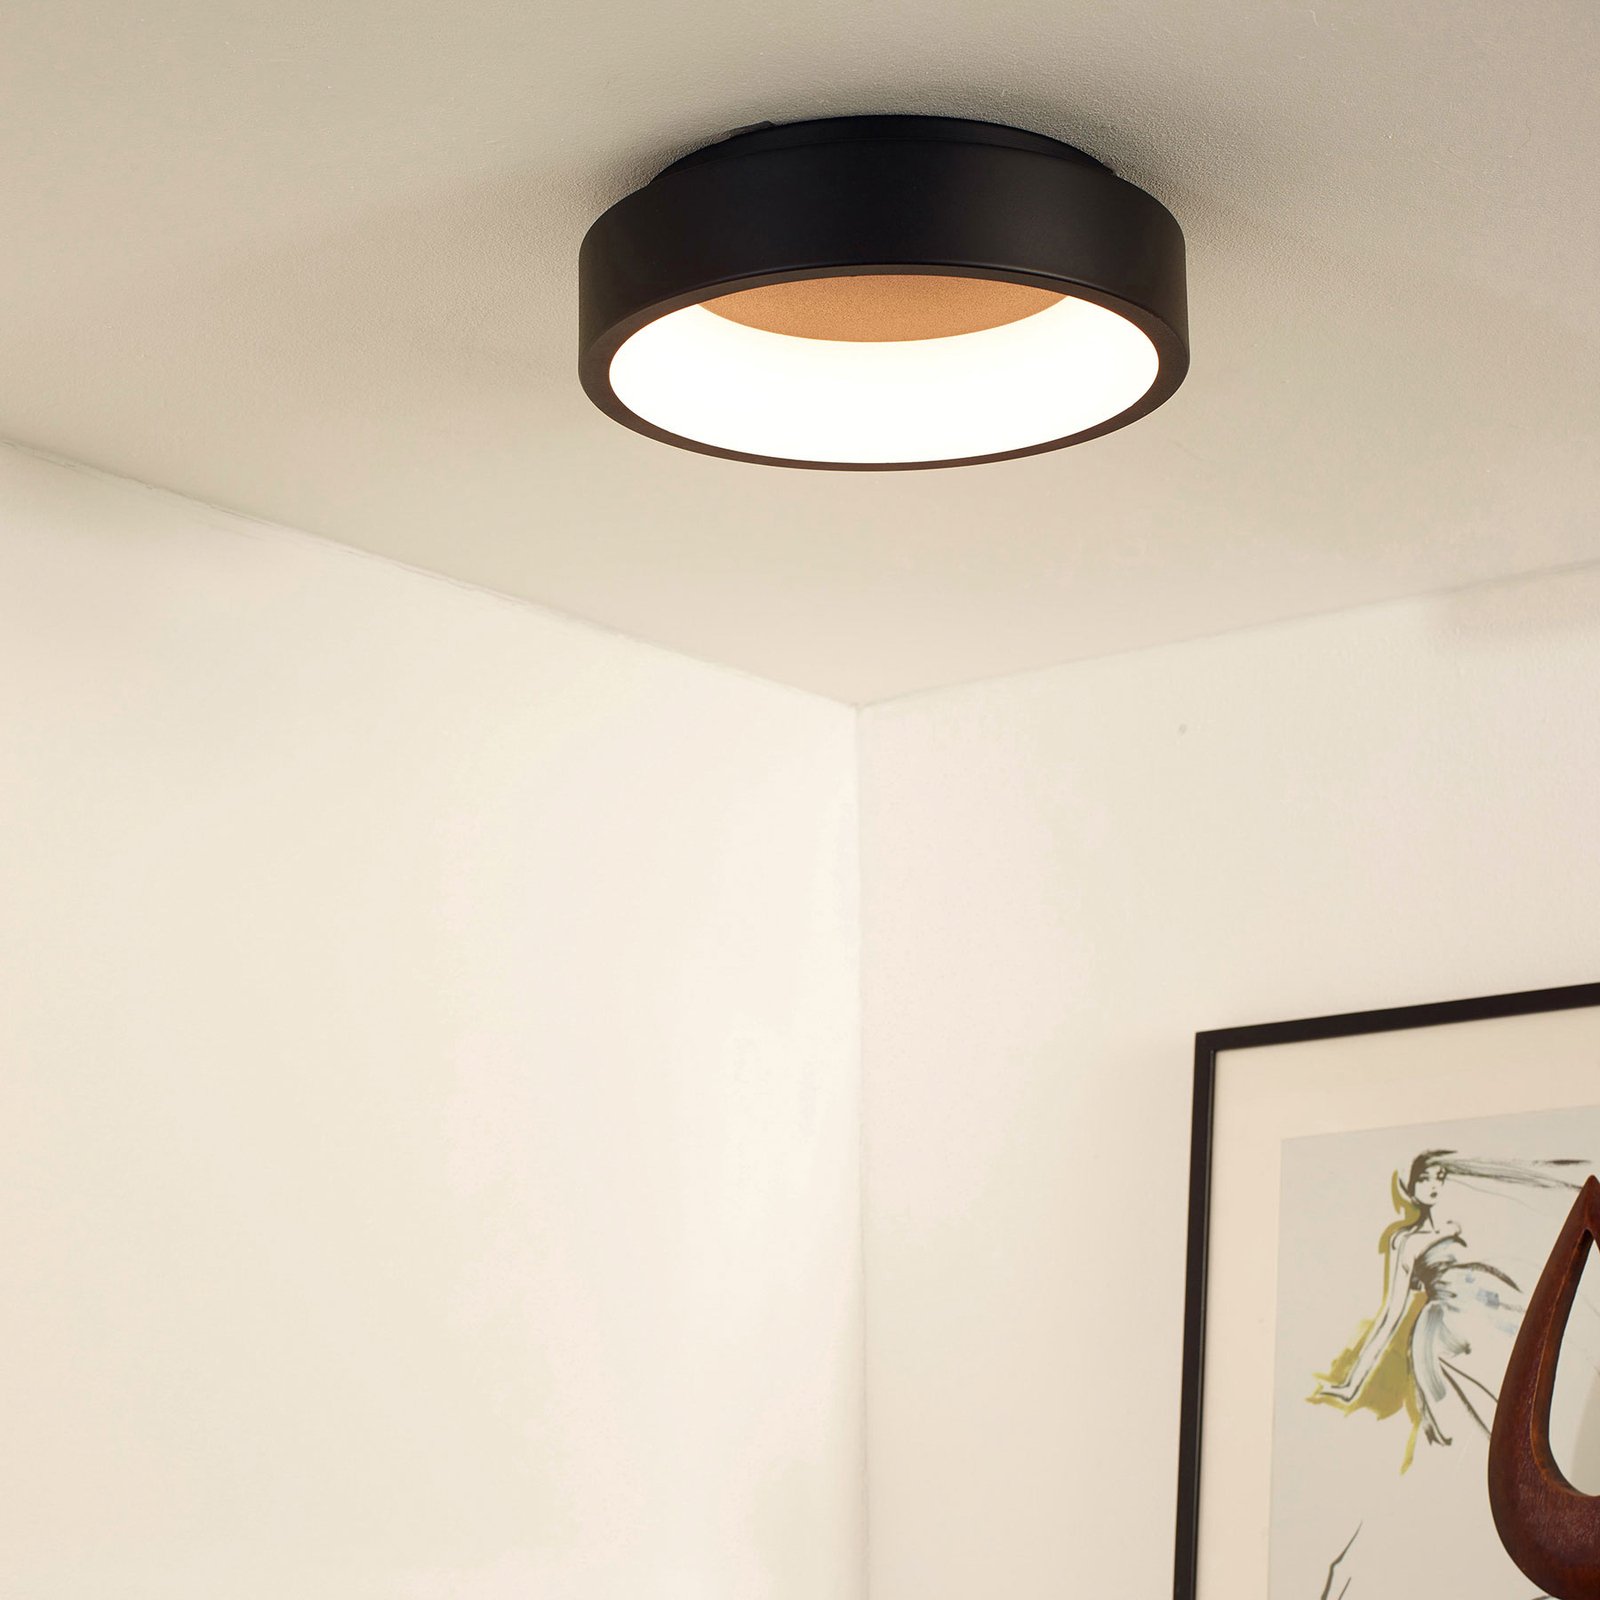 LED ceiling light Talowe black Ø 30 cm